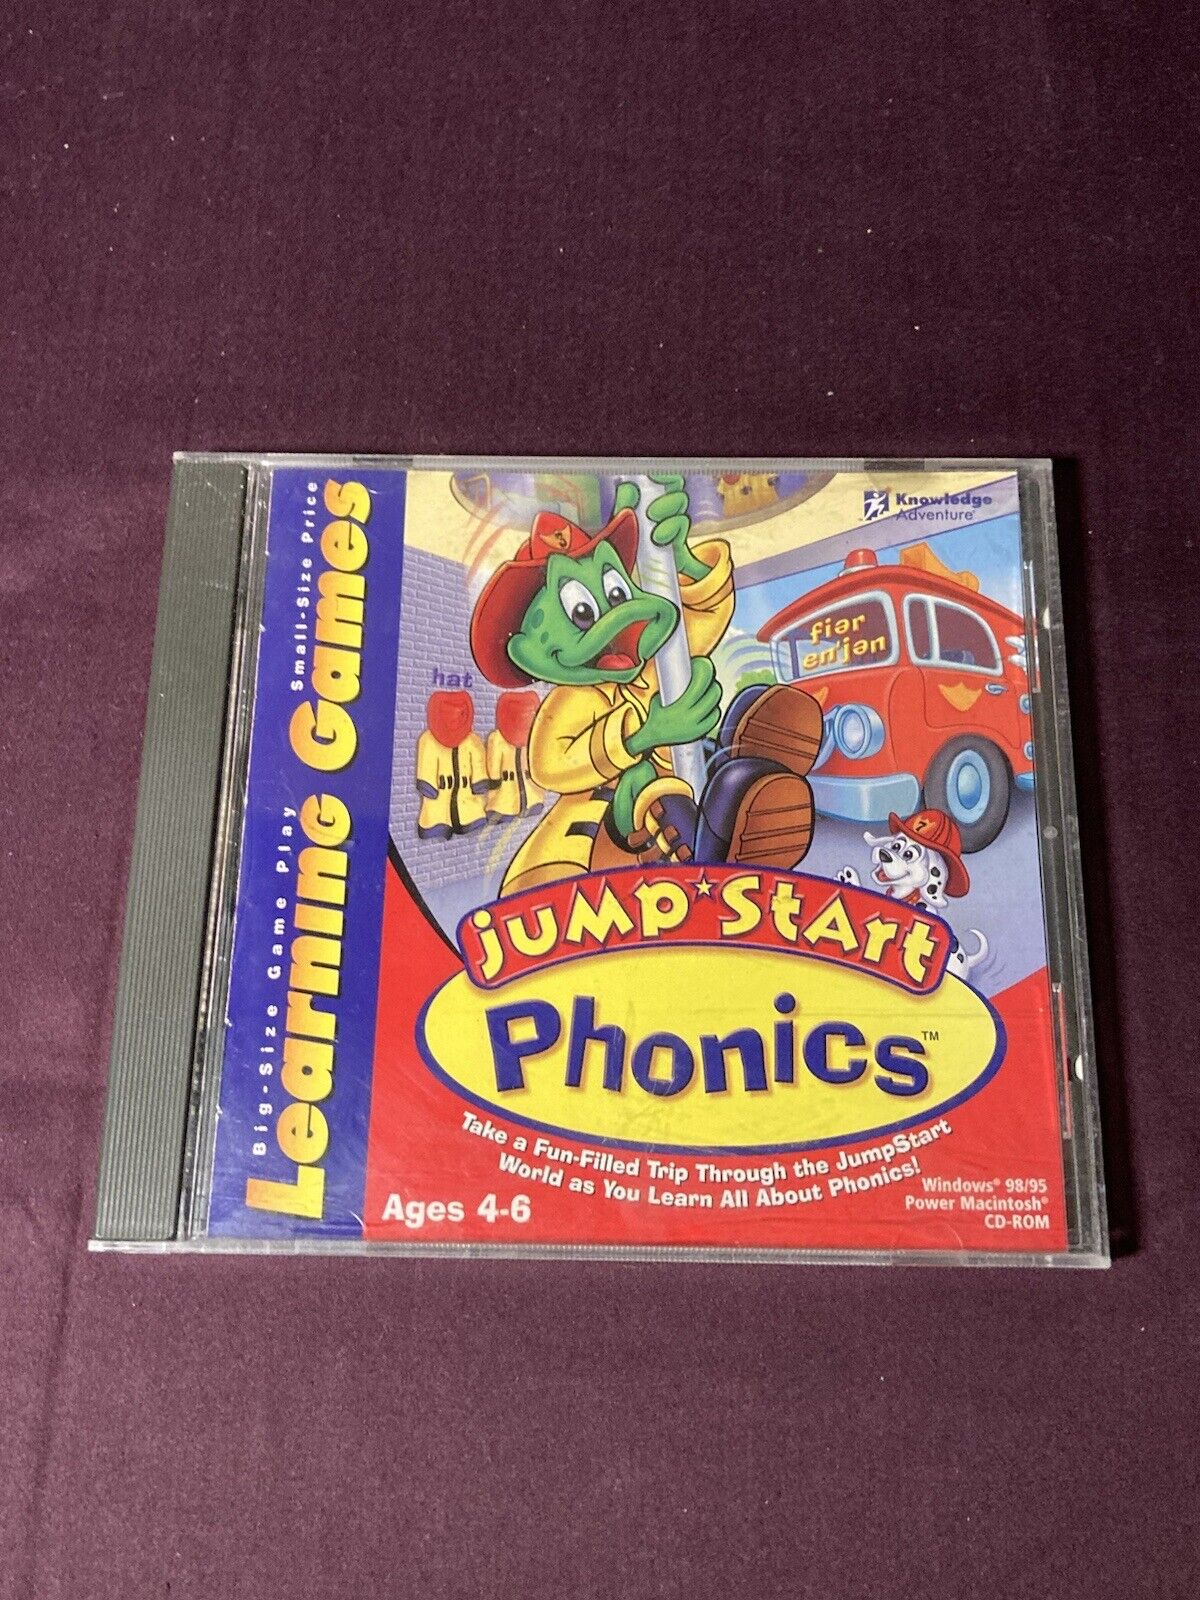 Jump Start Phonics CD-ROM Ages 4-6 PC/Mac 1999 Educational Games Homeschool Kids